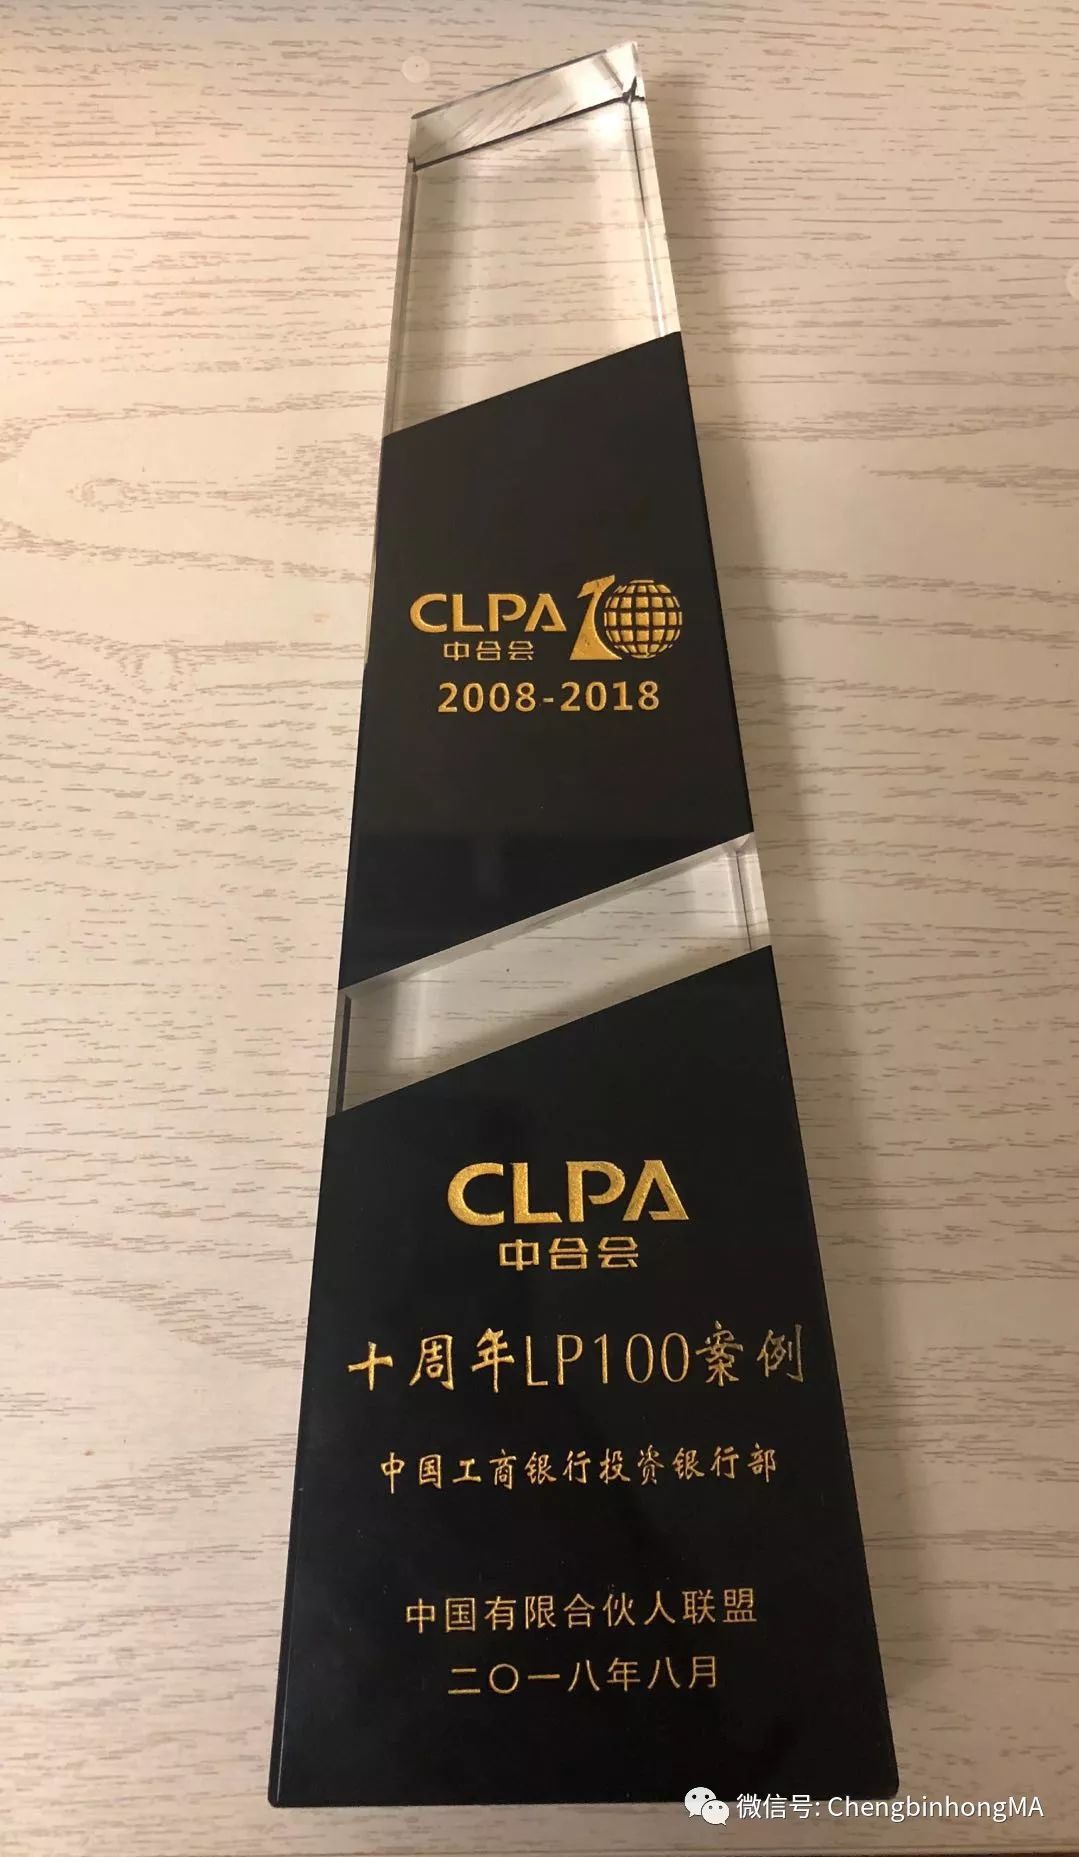 工商银行荣获“CLPA2017-2018年度最佳并购服务奖”、 “CLPA十周年LP100案例”两大奖项